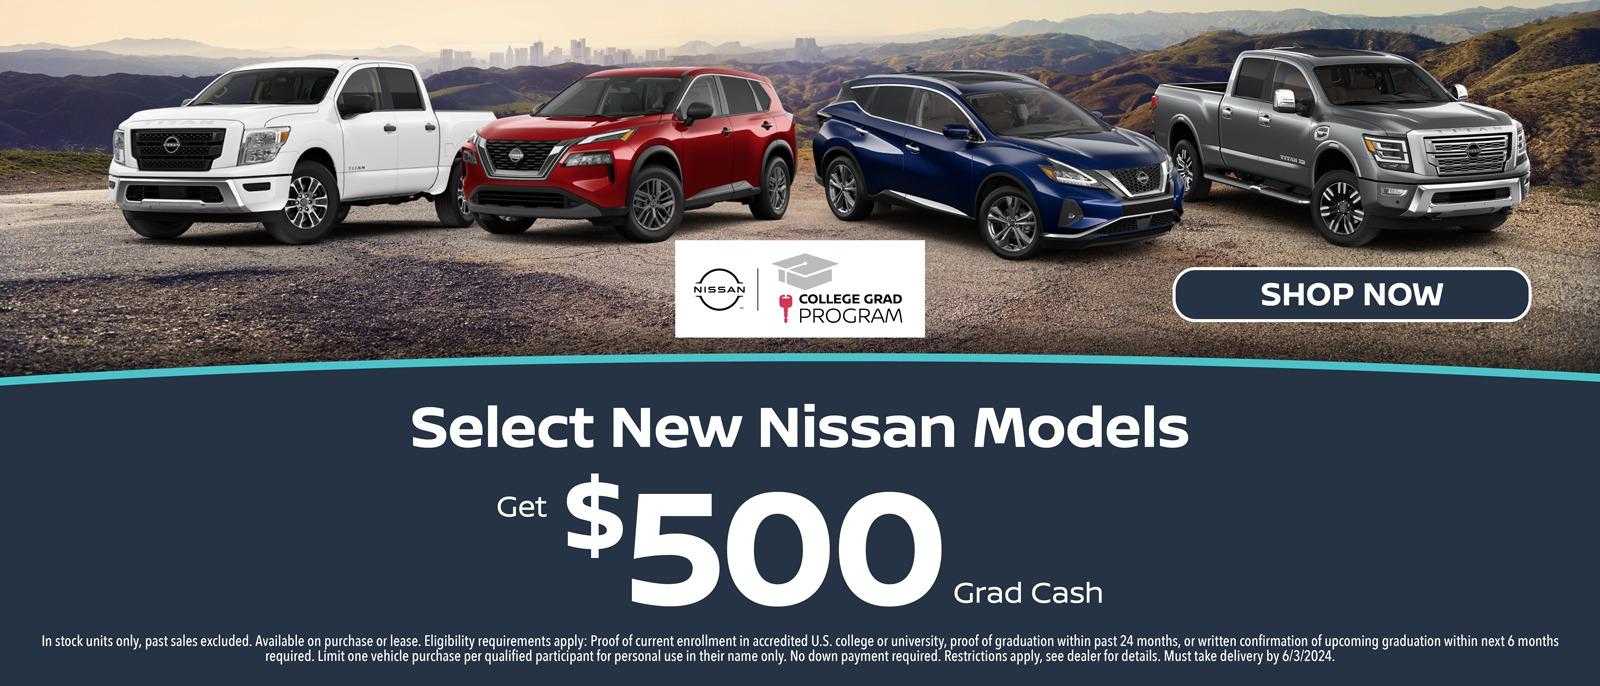 Get $500 Grad Cash Toward Select New Nissan Models